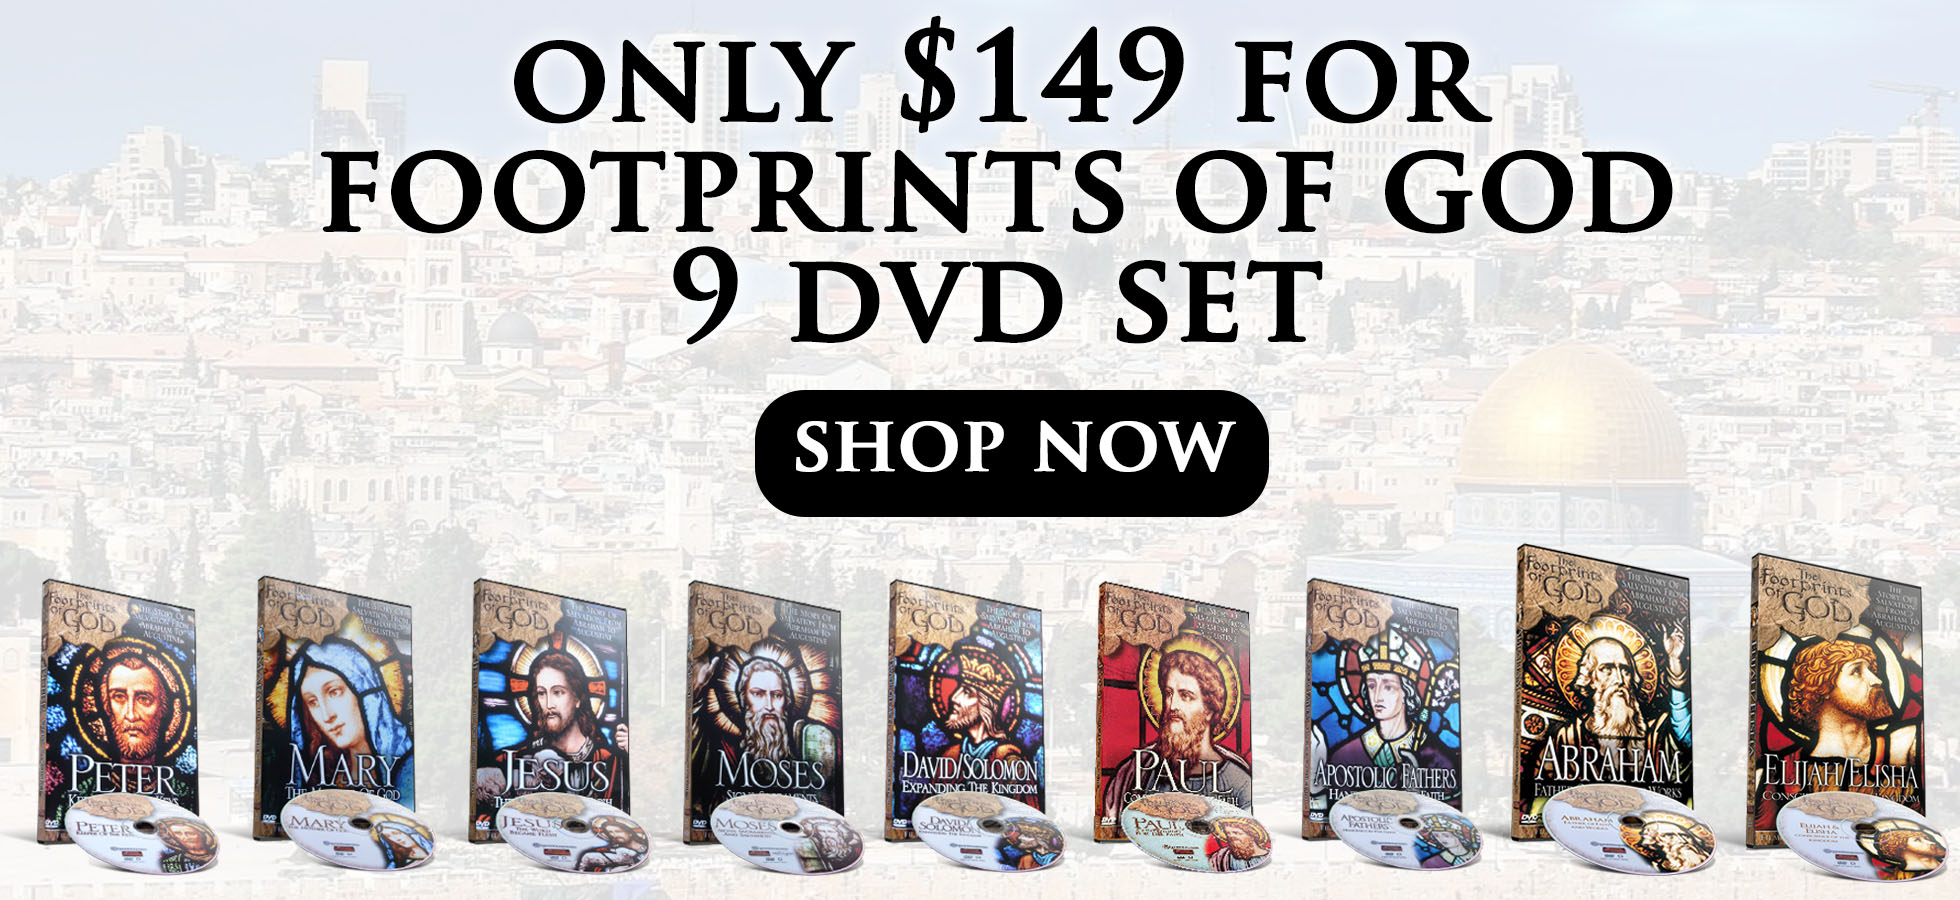 Only $149 for Footprints of God 9 DVD Set